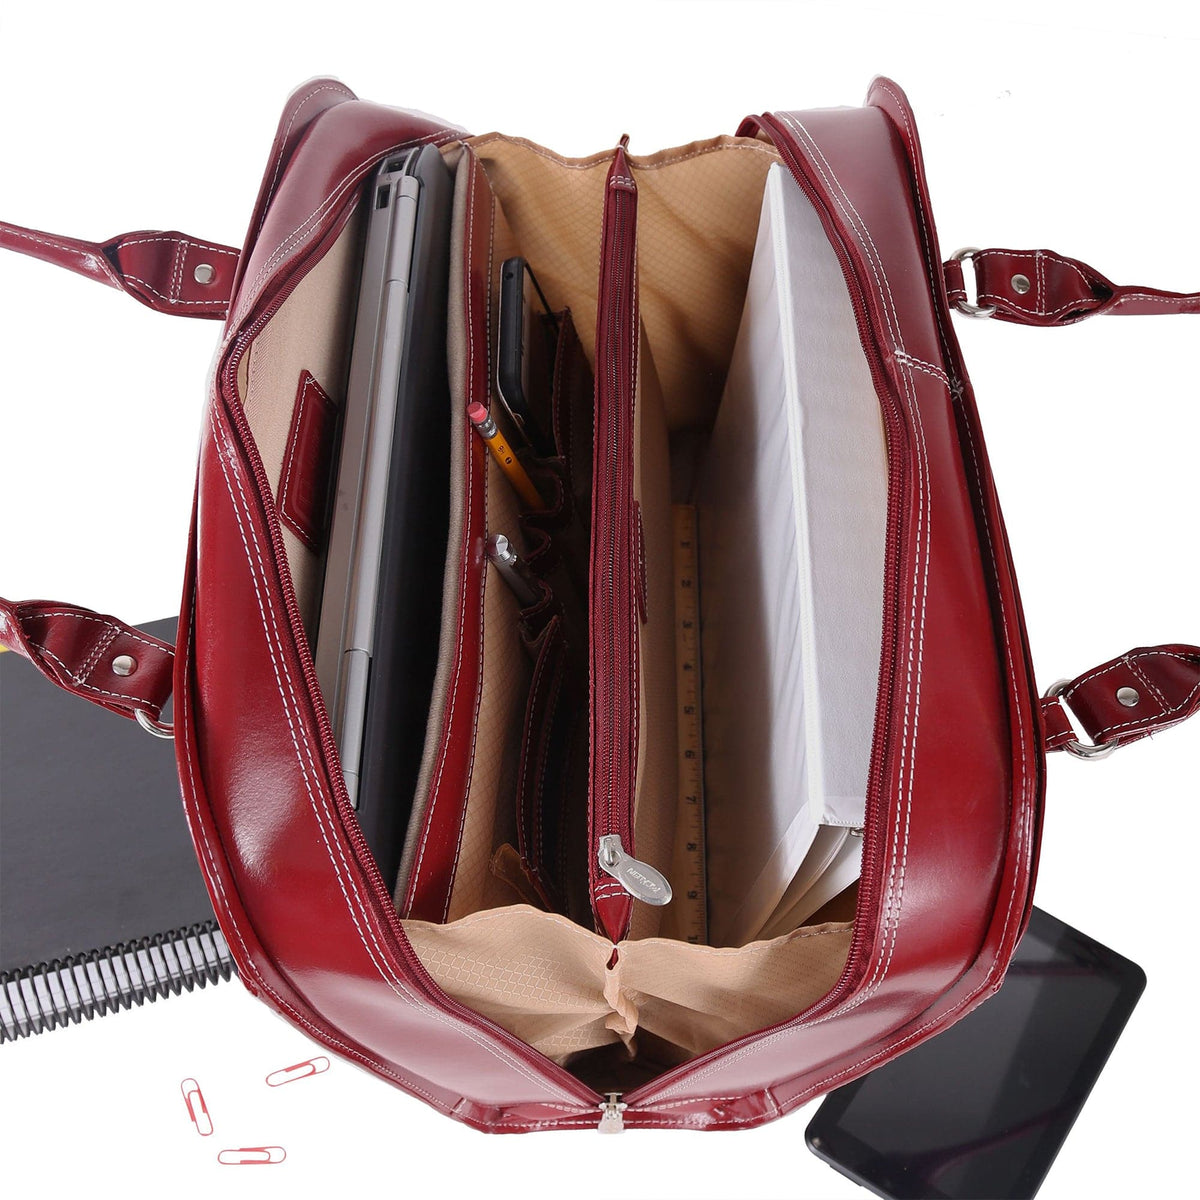 McKlein USA Hillside 14" Leather Ladies' Laptop Briefcase